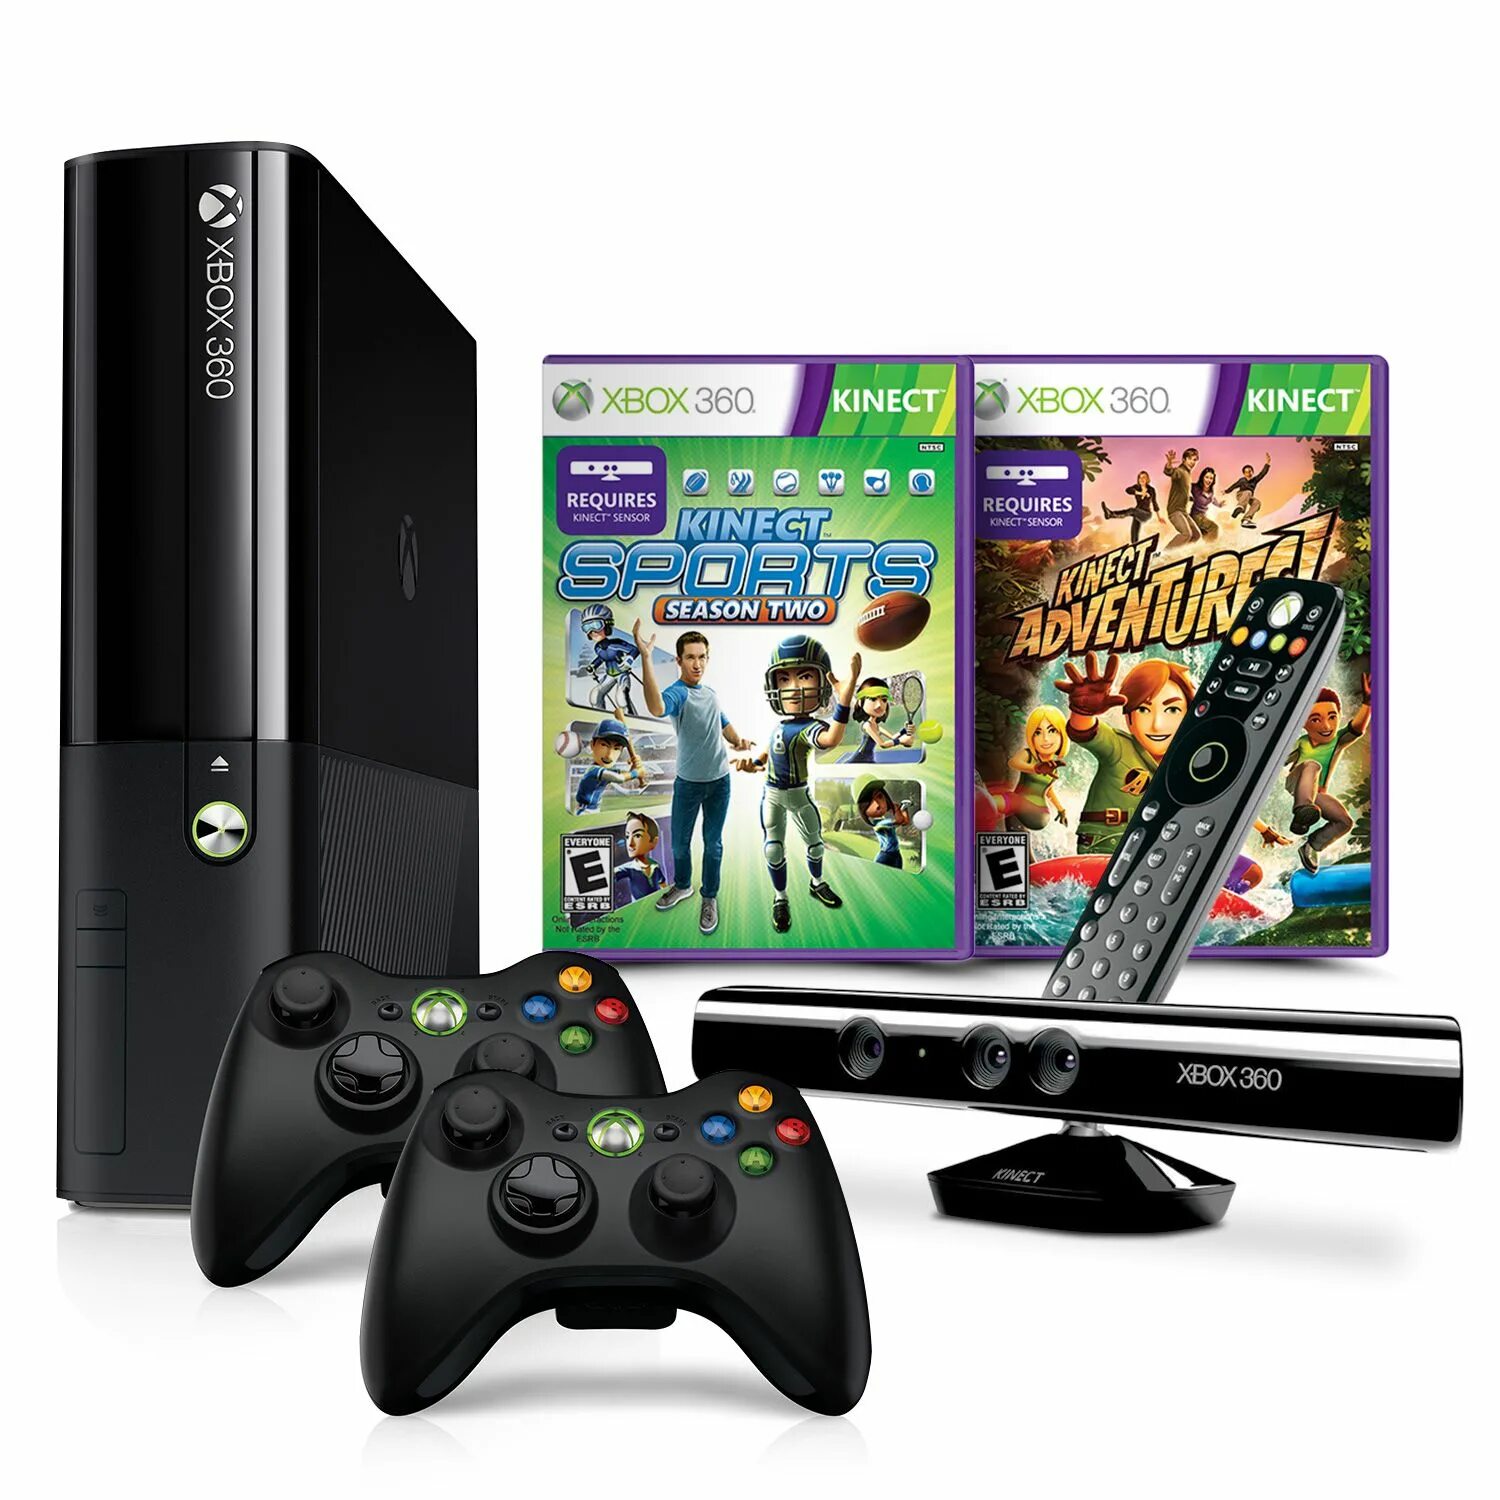 Икс бокс приставка игры. Игровая приставка Икс бокс 360. Игровая консоль Xbox 360 Kinect. Игровая приставка Xbox 360 s. Консоль игровая приставка Xbox 360.